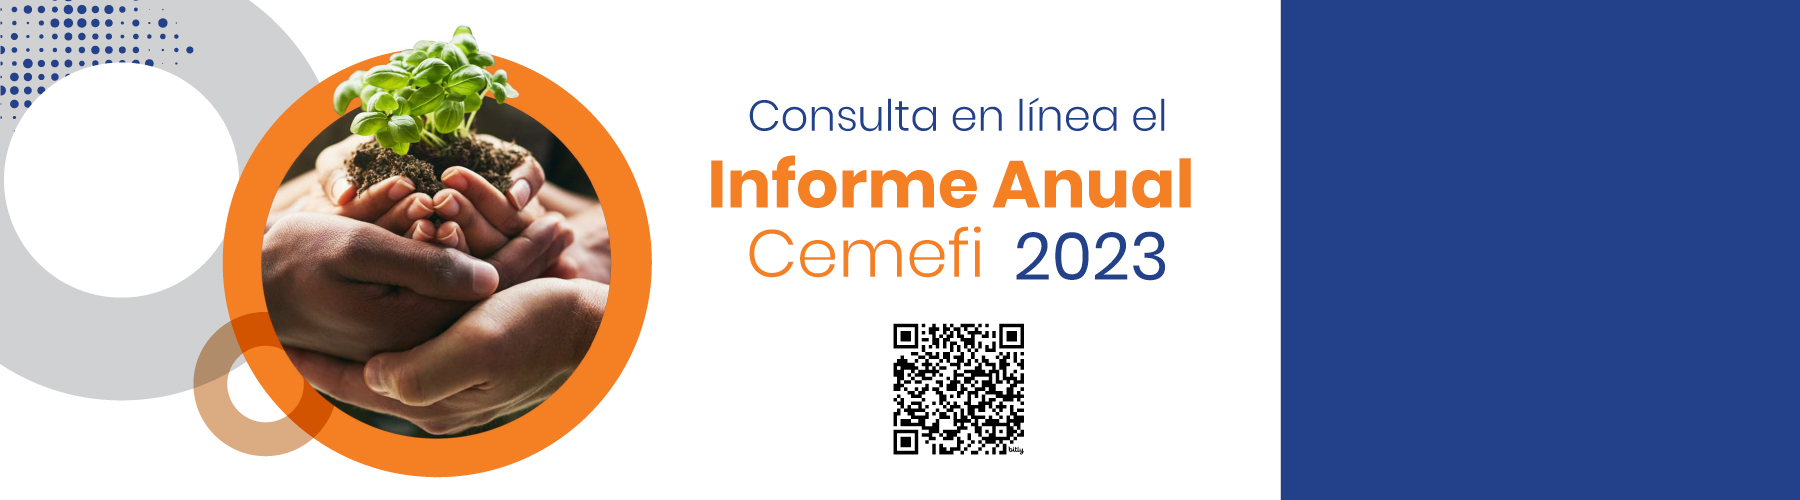 Te invitamos a conocer los resultados de nuestra operación al cumplir 35 años construyendo un México mejor. Consulta el Informe Anual Cemefi 2023.